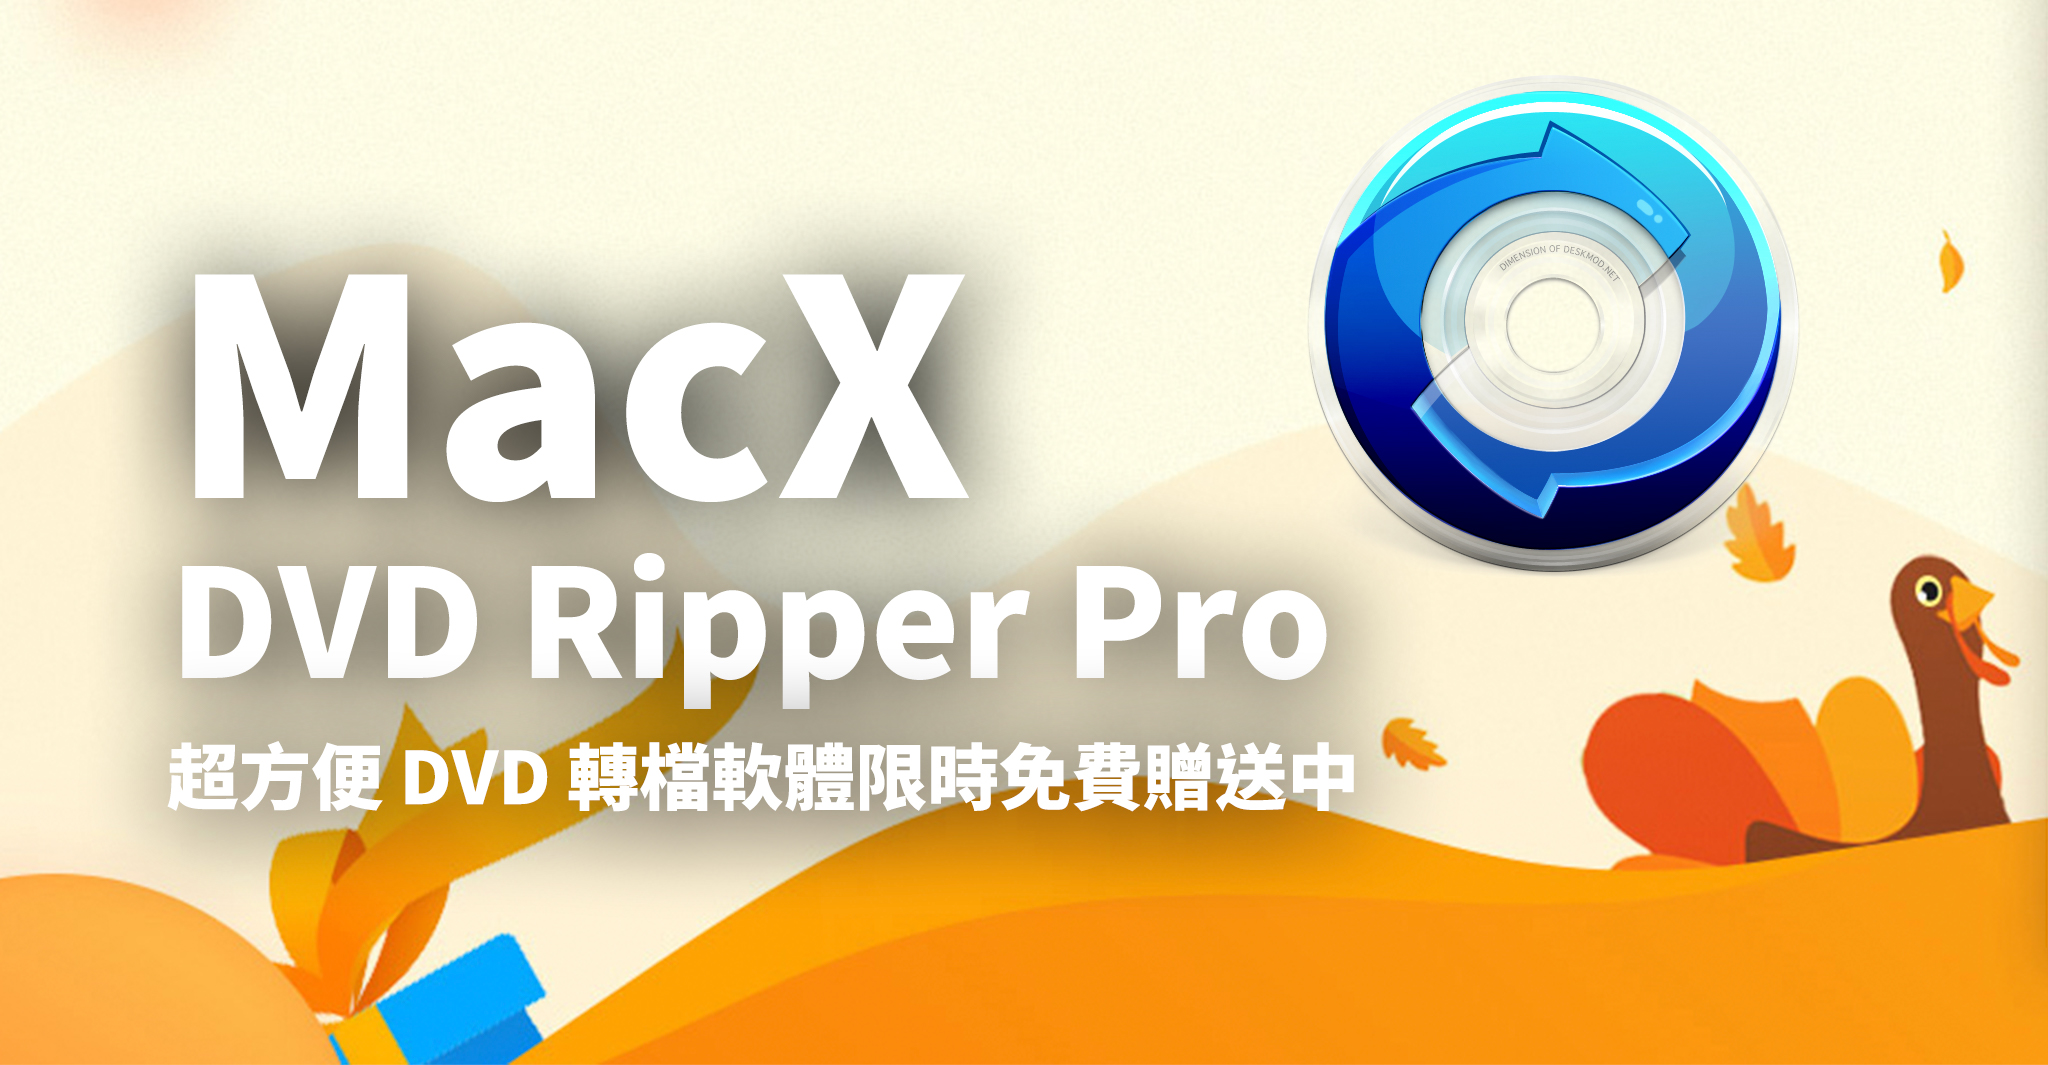 超實用dvd 轉檔軟體macx Dvd Ripper Pro 限時免費贈送 蘋果仁 Iphone Ios 好物推薦科技媒體